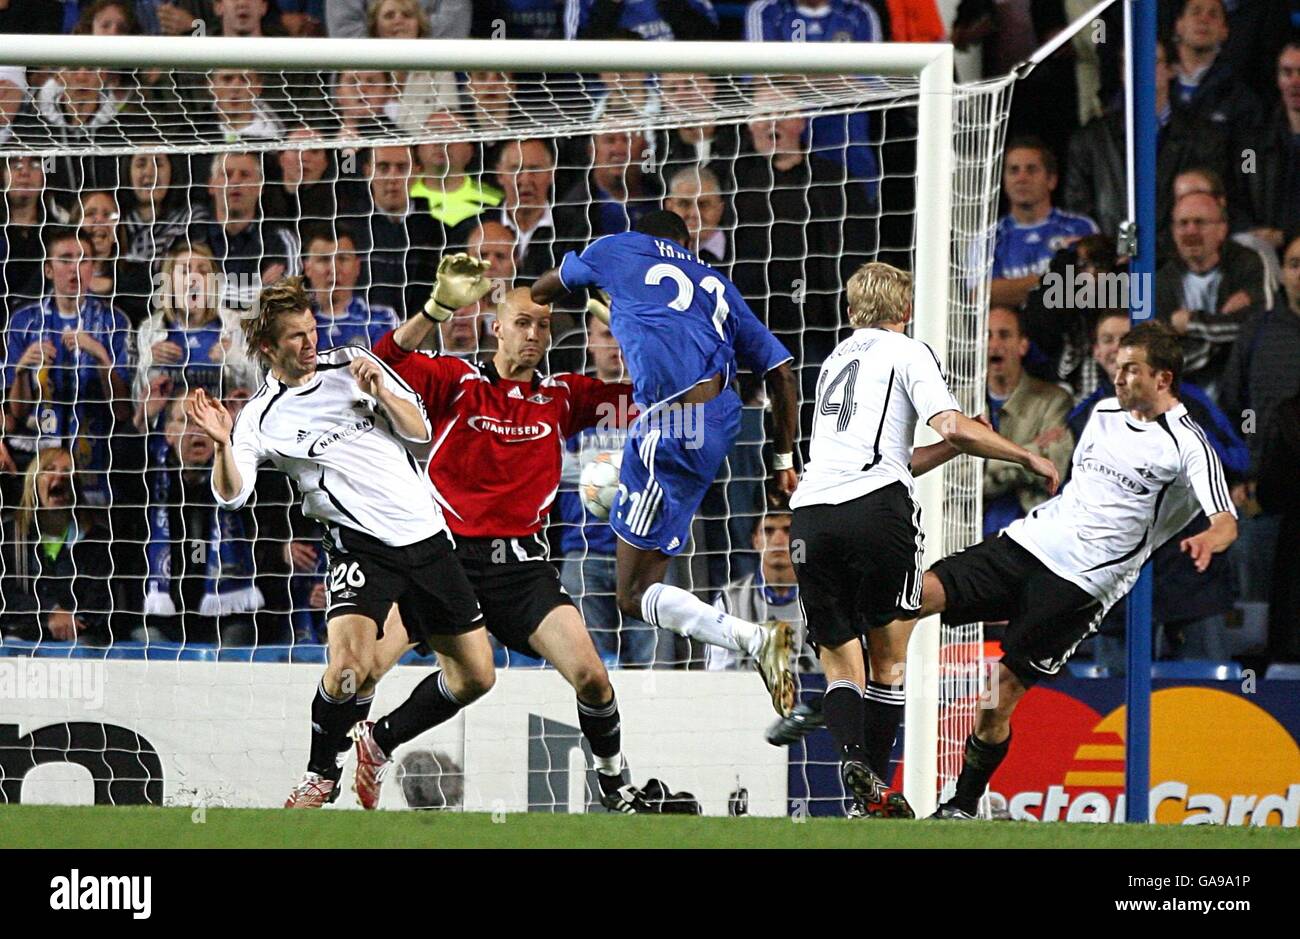 Soccer - UEFA Champions League - Gruppo B - Chelsea v Rosenborg - Stamford Bridge Foto Stock